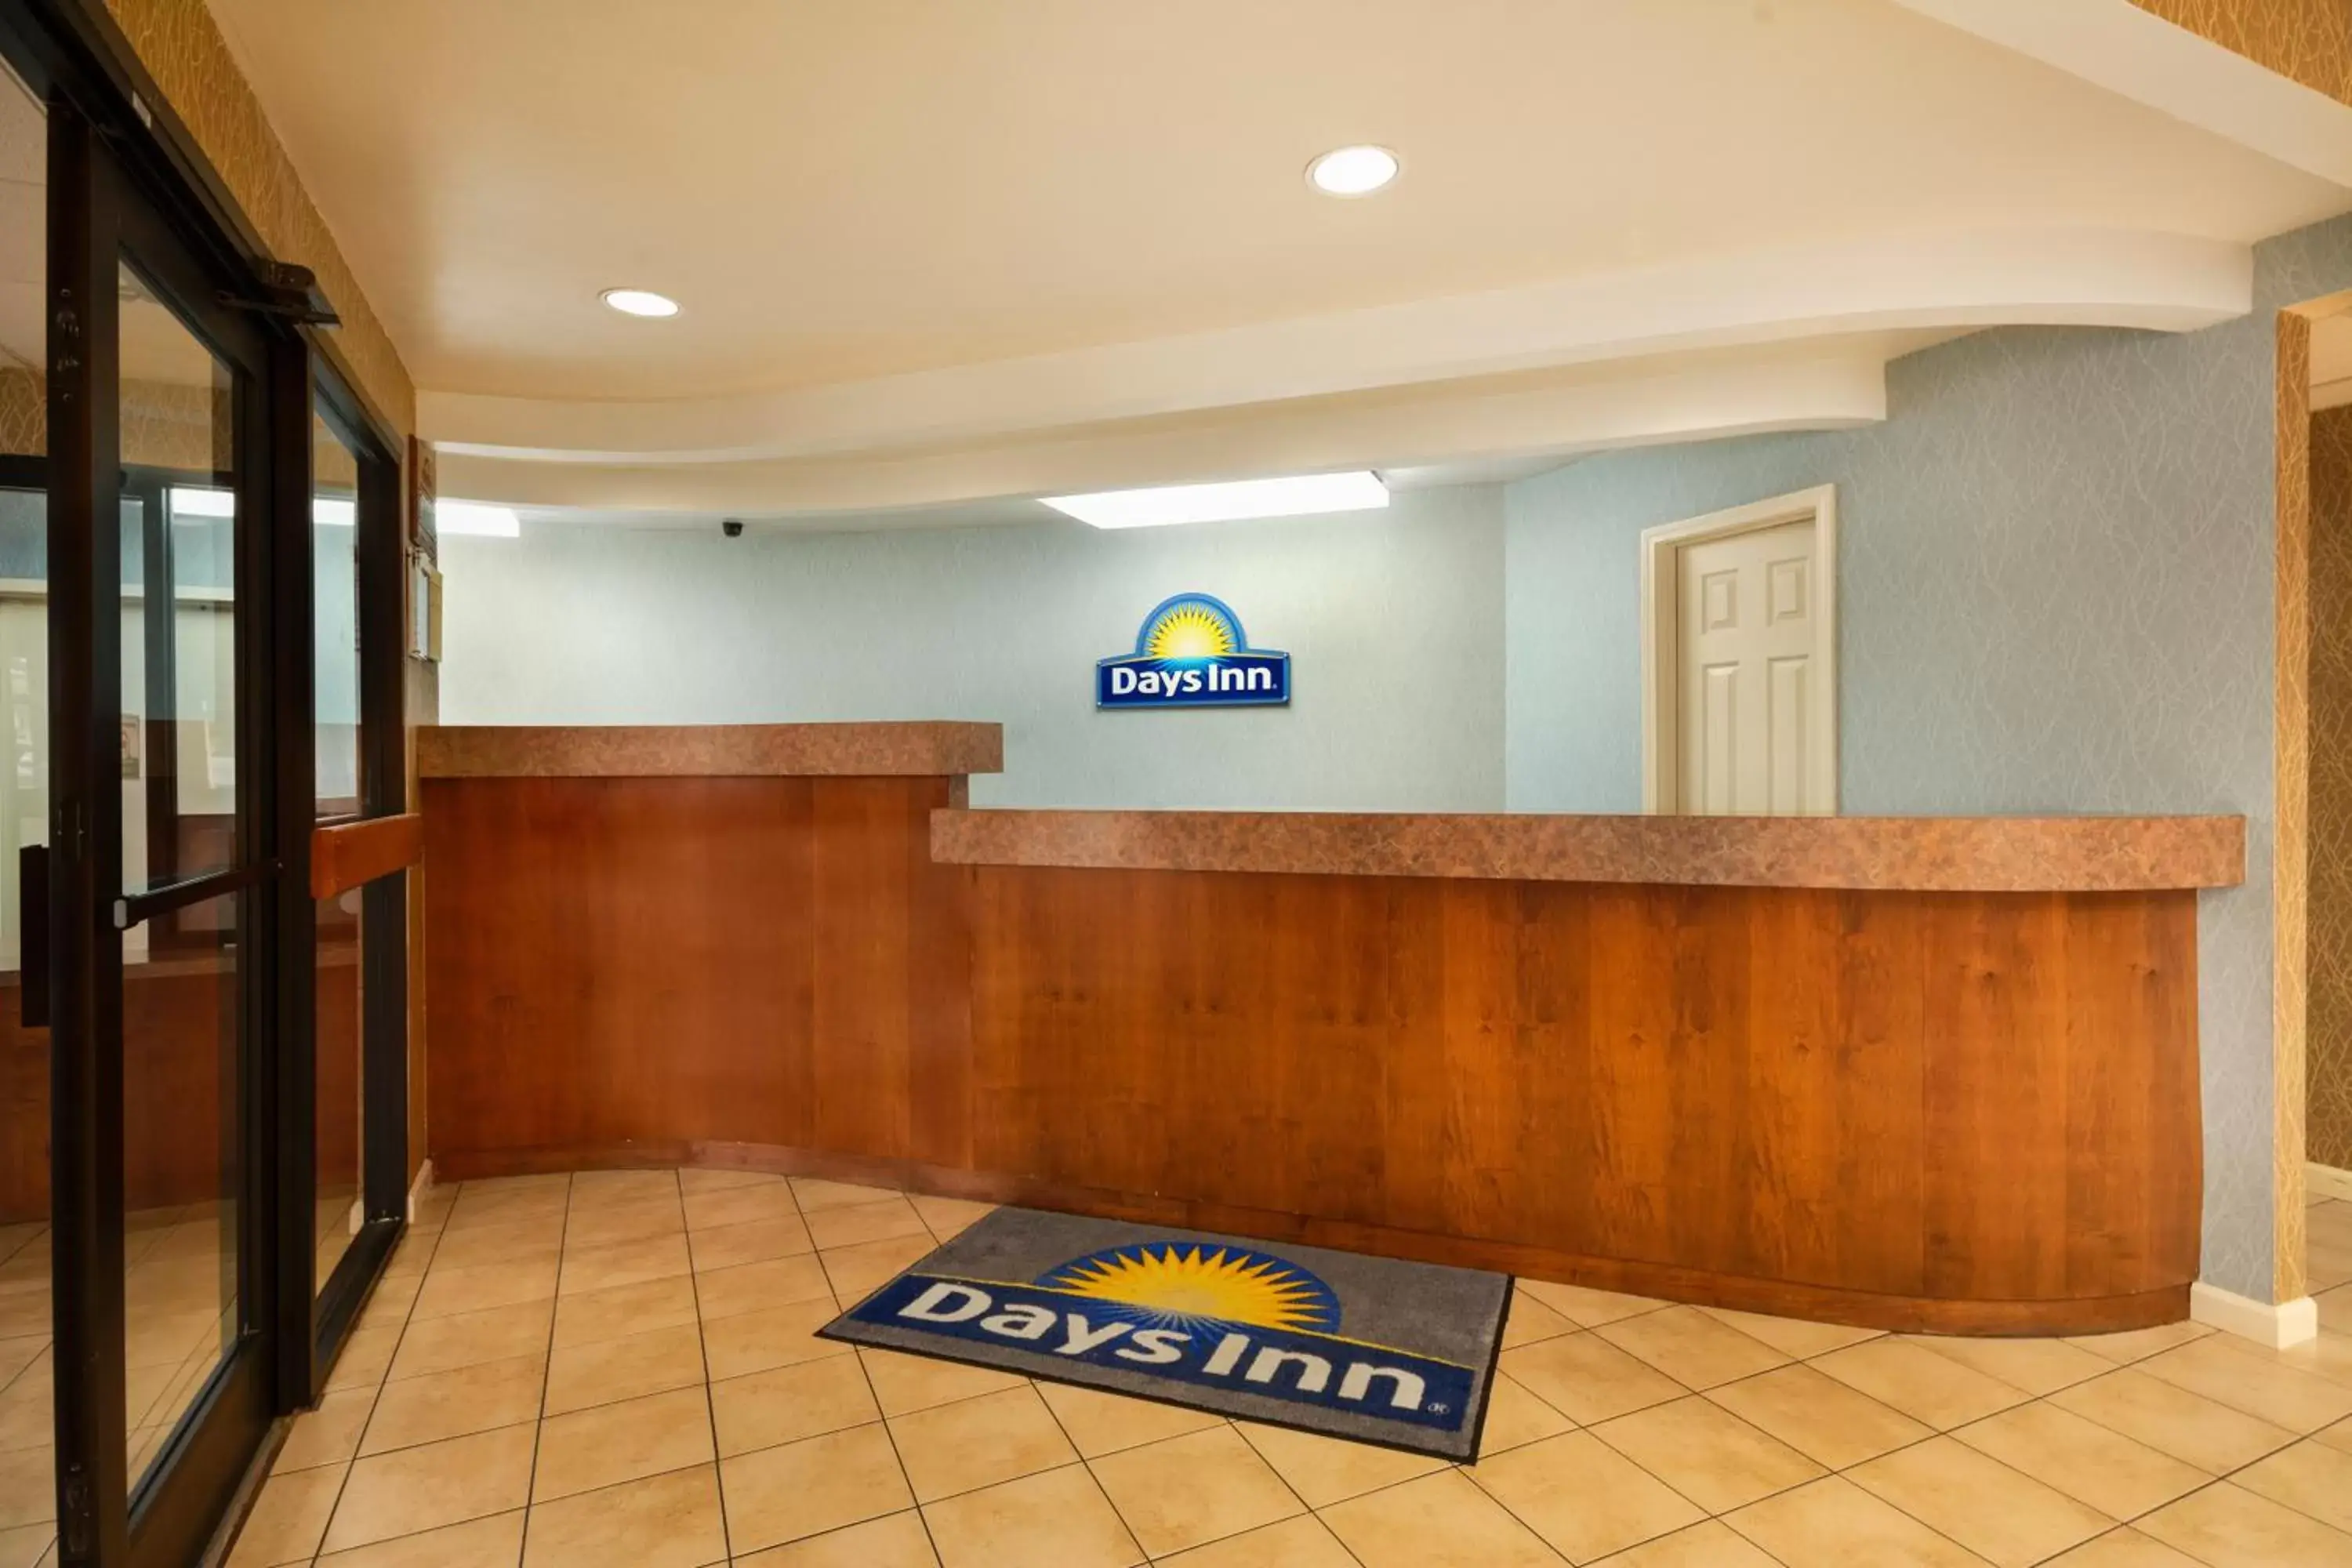 Lobby or reception, Lobby/Reception in Days Inn by Wyndham Atlanta Stone Mountain